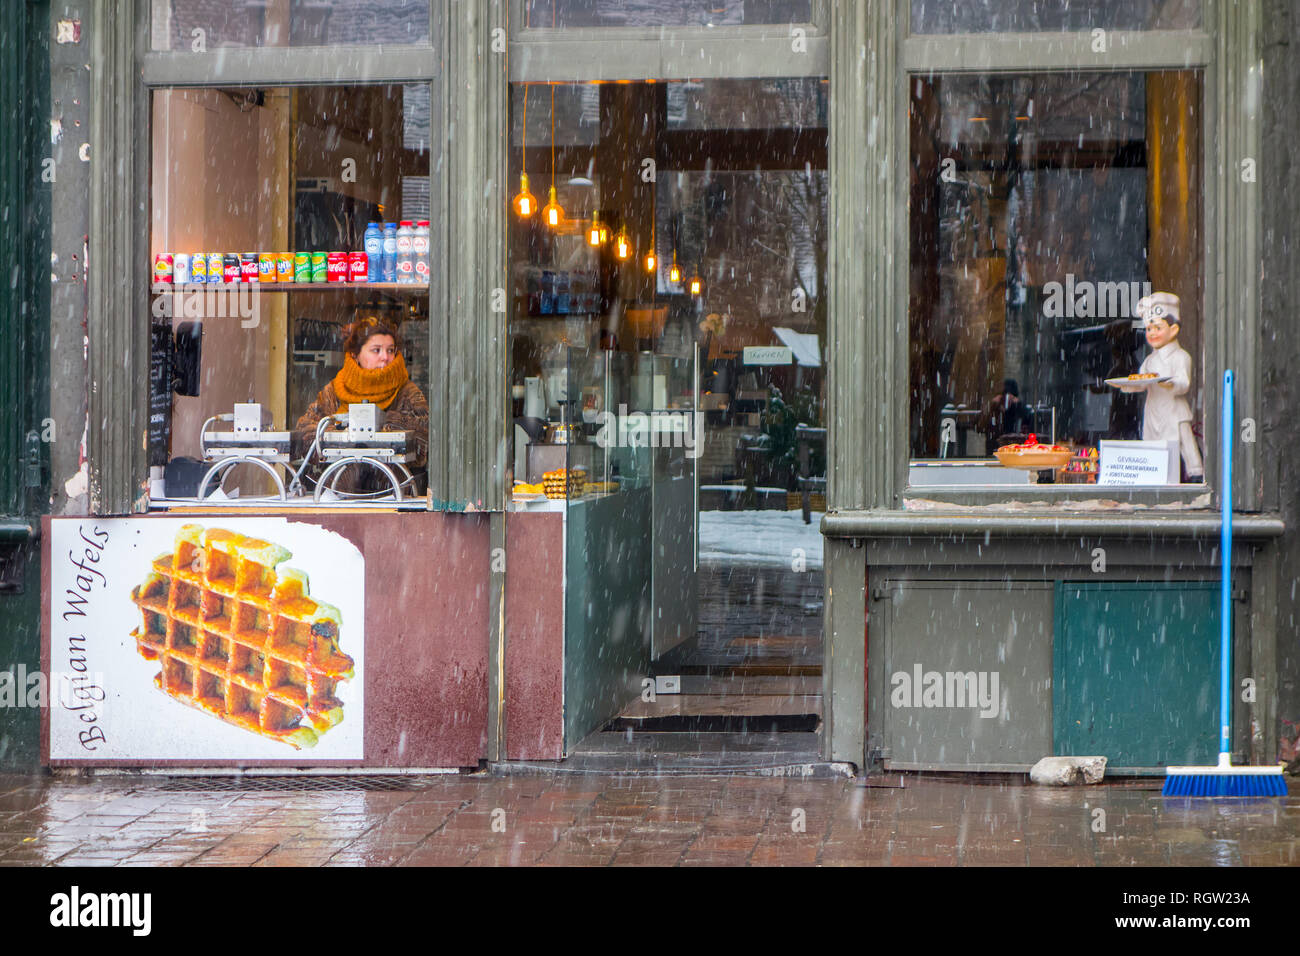 Vendeur de gaufres belges en attente de clients / touristes durant le grésil et neige douche en hiver dans la ville de Gand, Flandre orientale, Belgique Banque D'Images